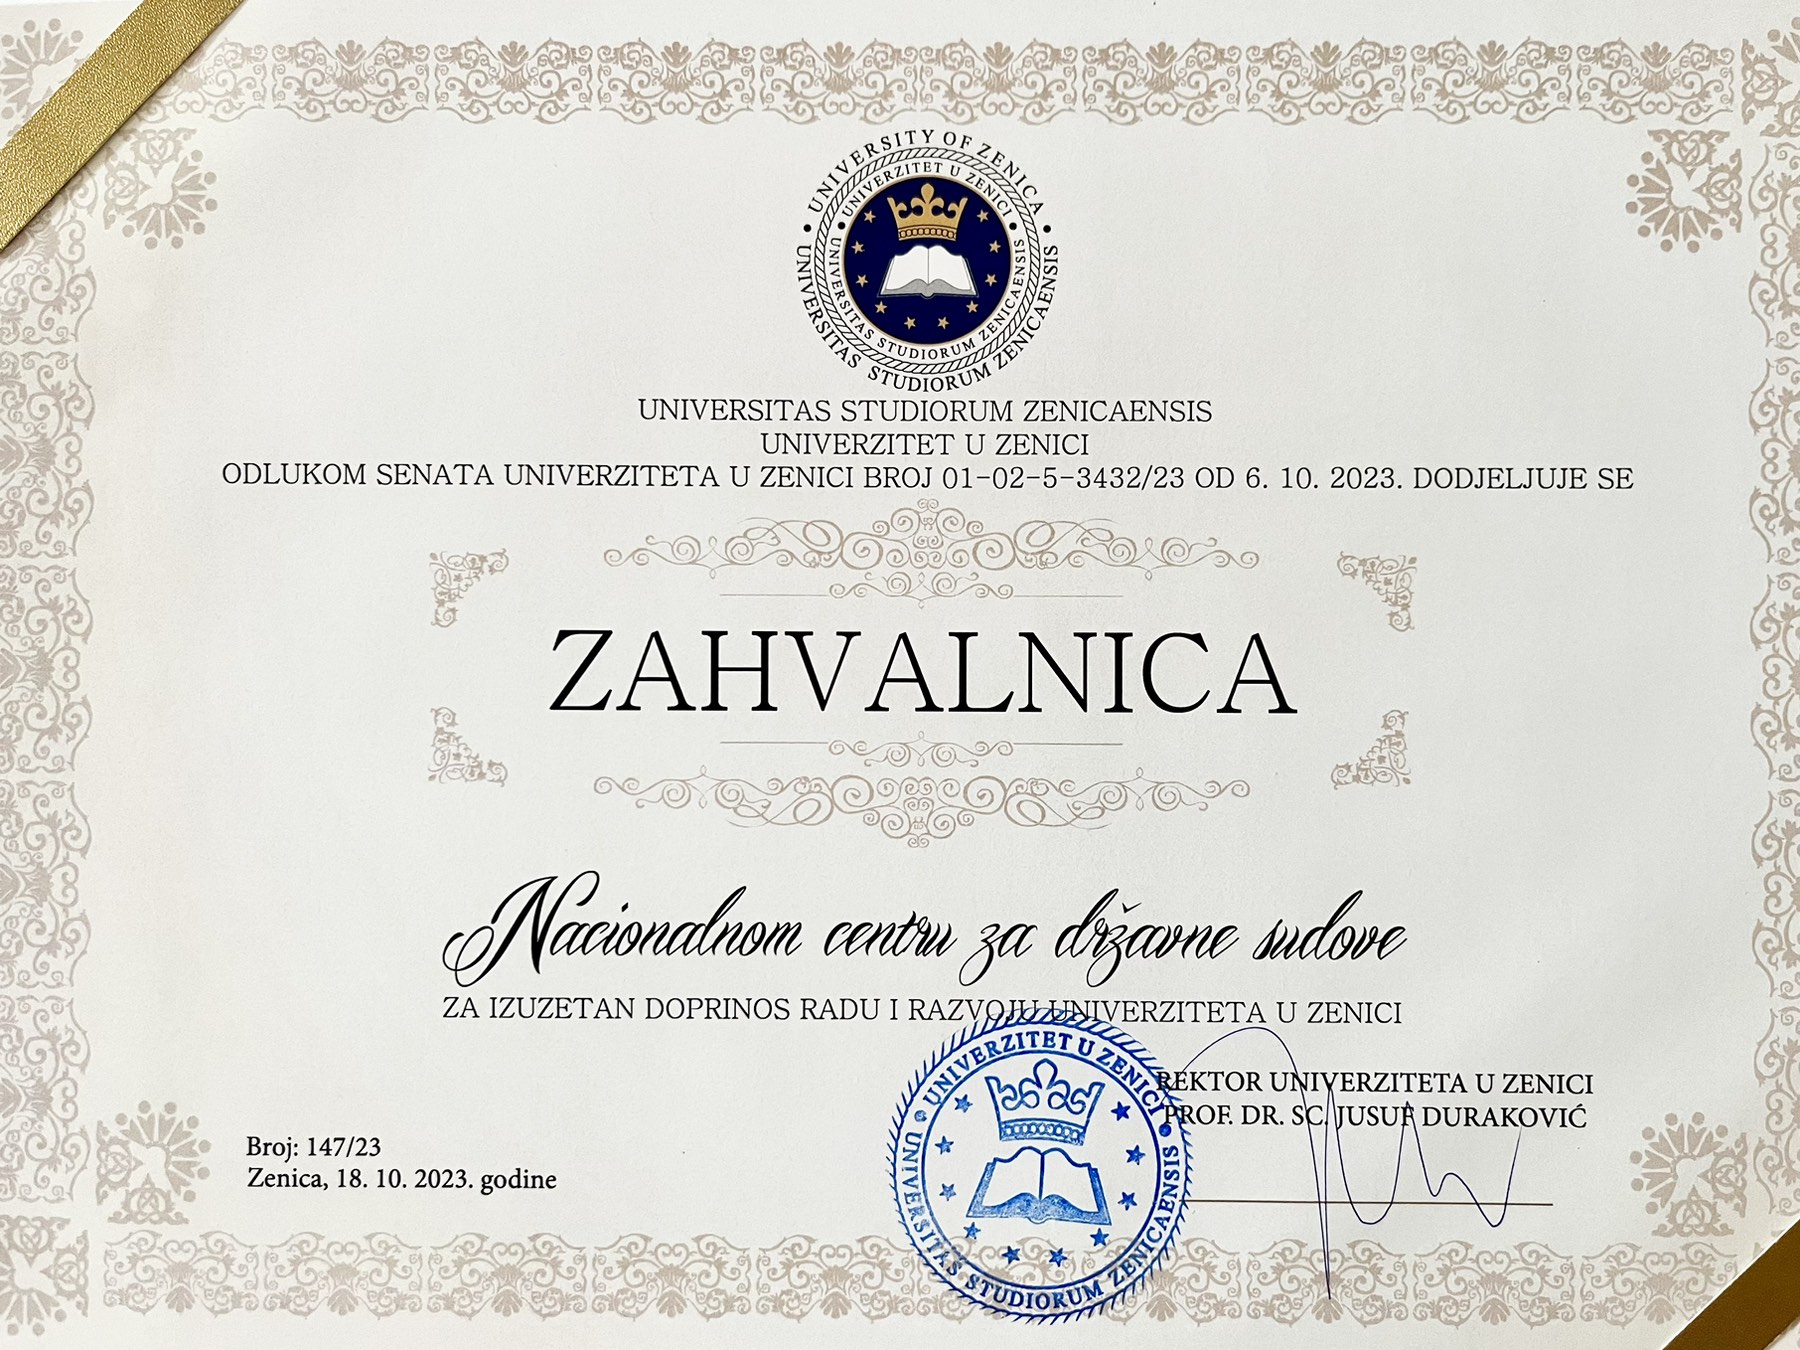 Univerzitet u Zenici uručio plaketu Nacionalnom centru za državne sudove za izuzetan doprinos razvoju Univerziteta 